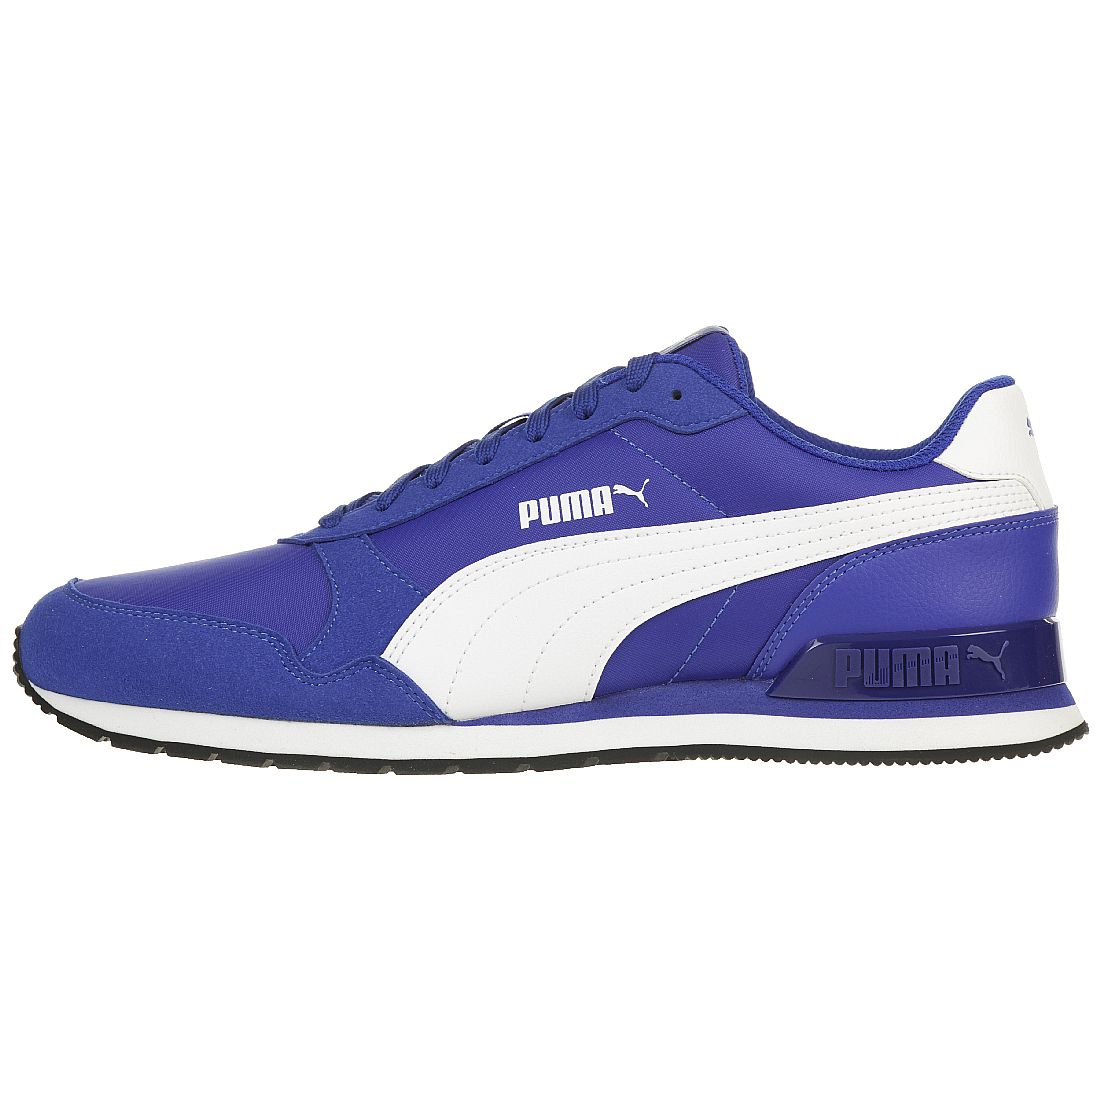 Puma ST Runner v2 NL Sneaker Herren blau 365278 14